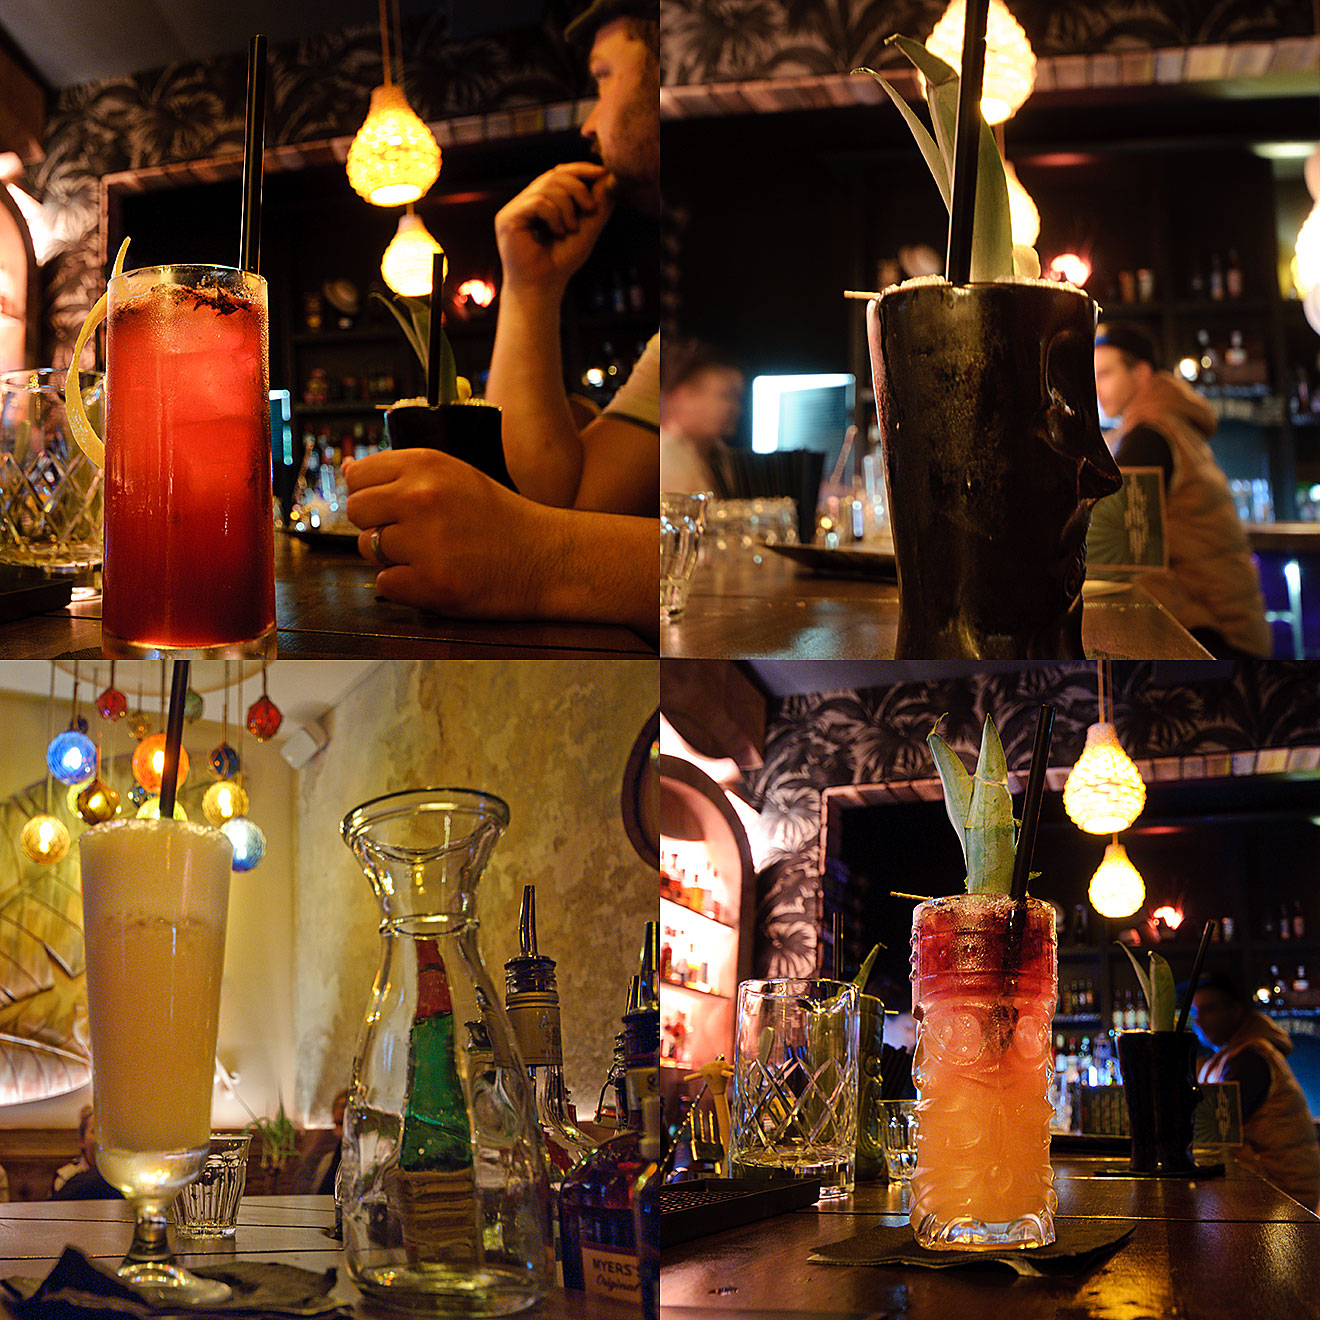 Die zweite Runde Cocktails im Kawenzmann: Ein Hibiscus Rum Punch (oben links), ein Dead Reckoning (oben rechts), eine Port Light (unten links) und der Kawenzmann (unten rechts).